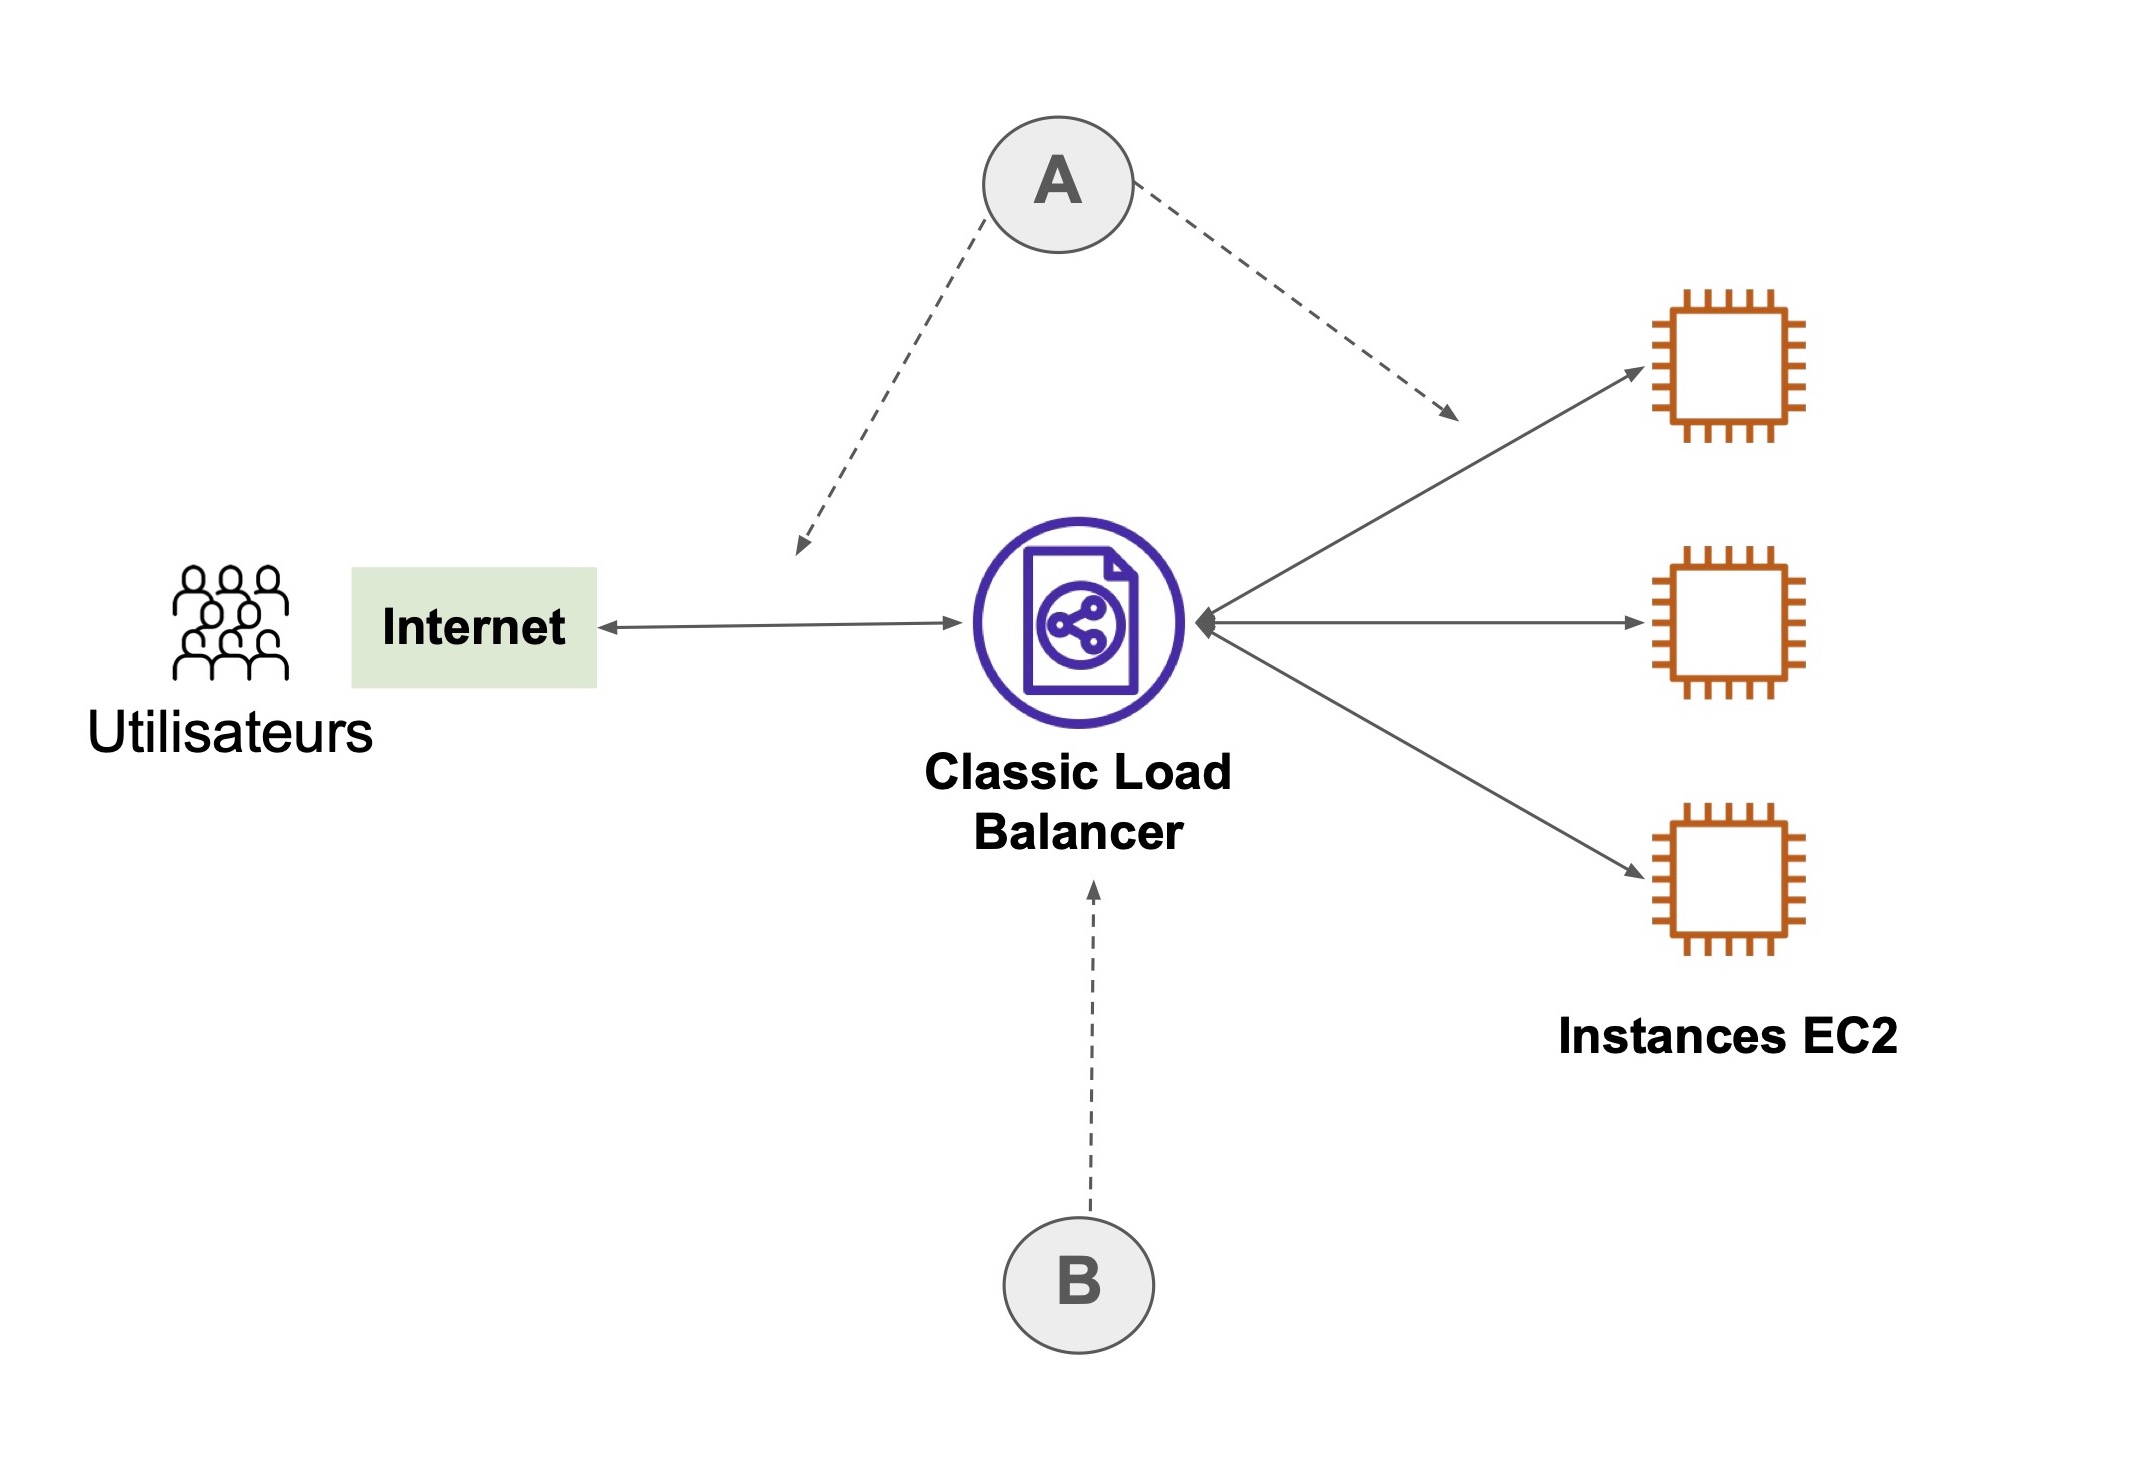 Schéma de fonctionnement d'un Classic Load Balancer : - À gauche, internet / les utilisateurs  - Au milieu : Classic Load Balancer  - À droite, instances EC2 Les 3 éléments sont reliés par des flèches horizontales.